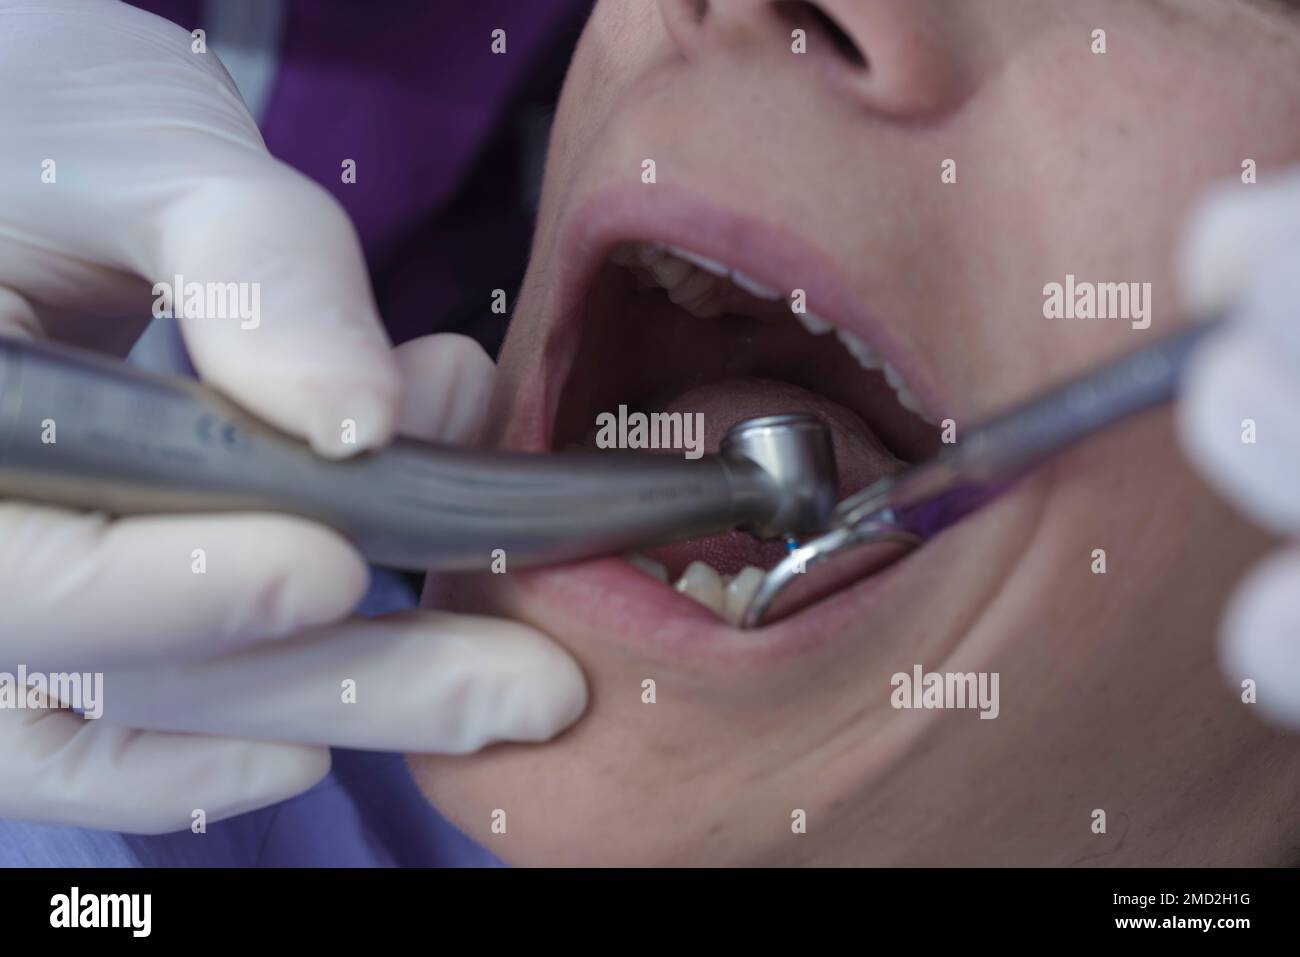 Una giovane donna con la bocca aperta al dentista, che usa lo specchio e una sonda per fare una diagnosi. Il dentista usa i guanti per evitare la malattia Foto Stock